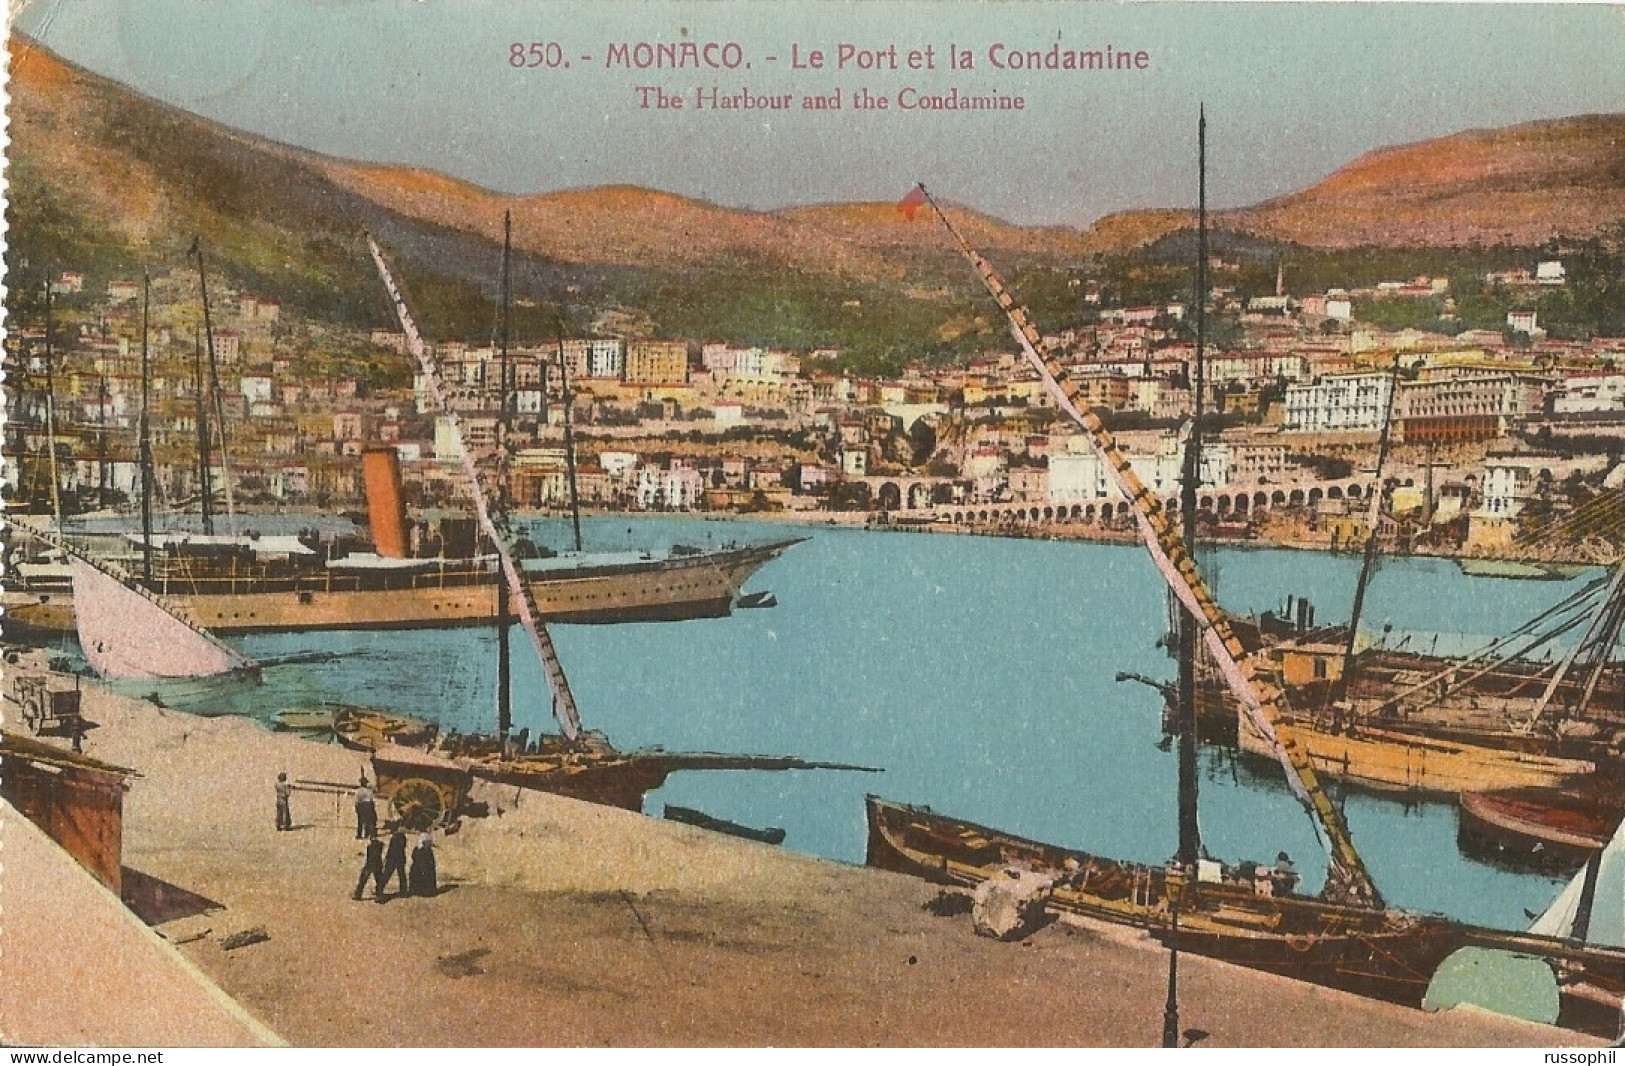 MONACO - LE PORT ET LA CONDAMINE - THE HARBOUR AND THE CONDAMINE - ED. GILETTA REF #850 - 1925 - Harbor